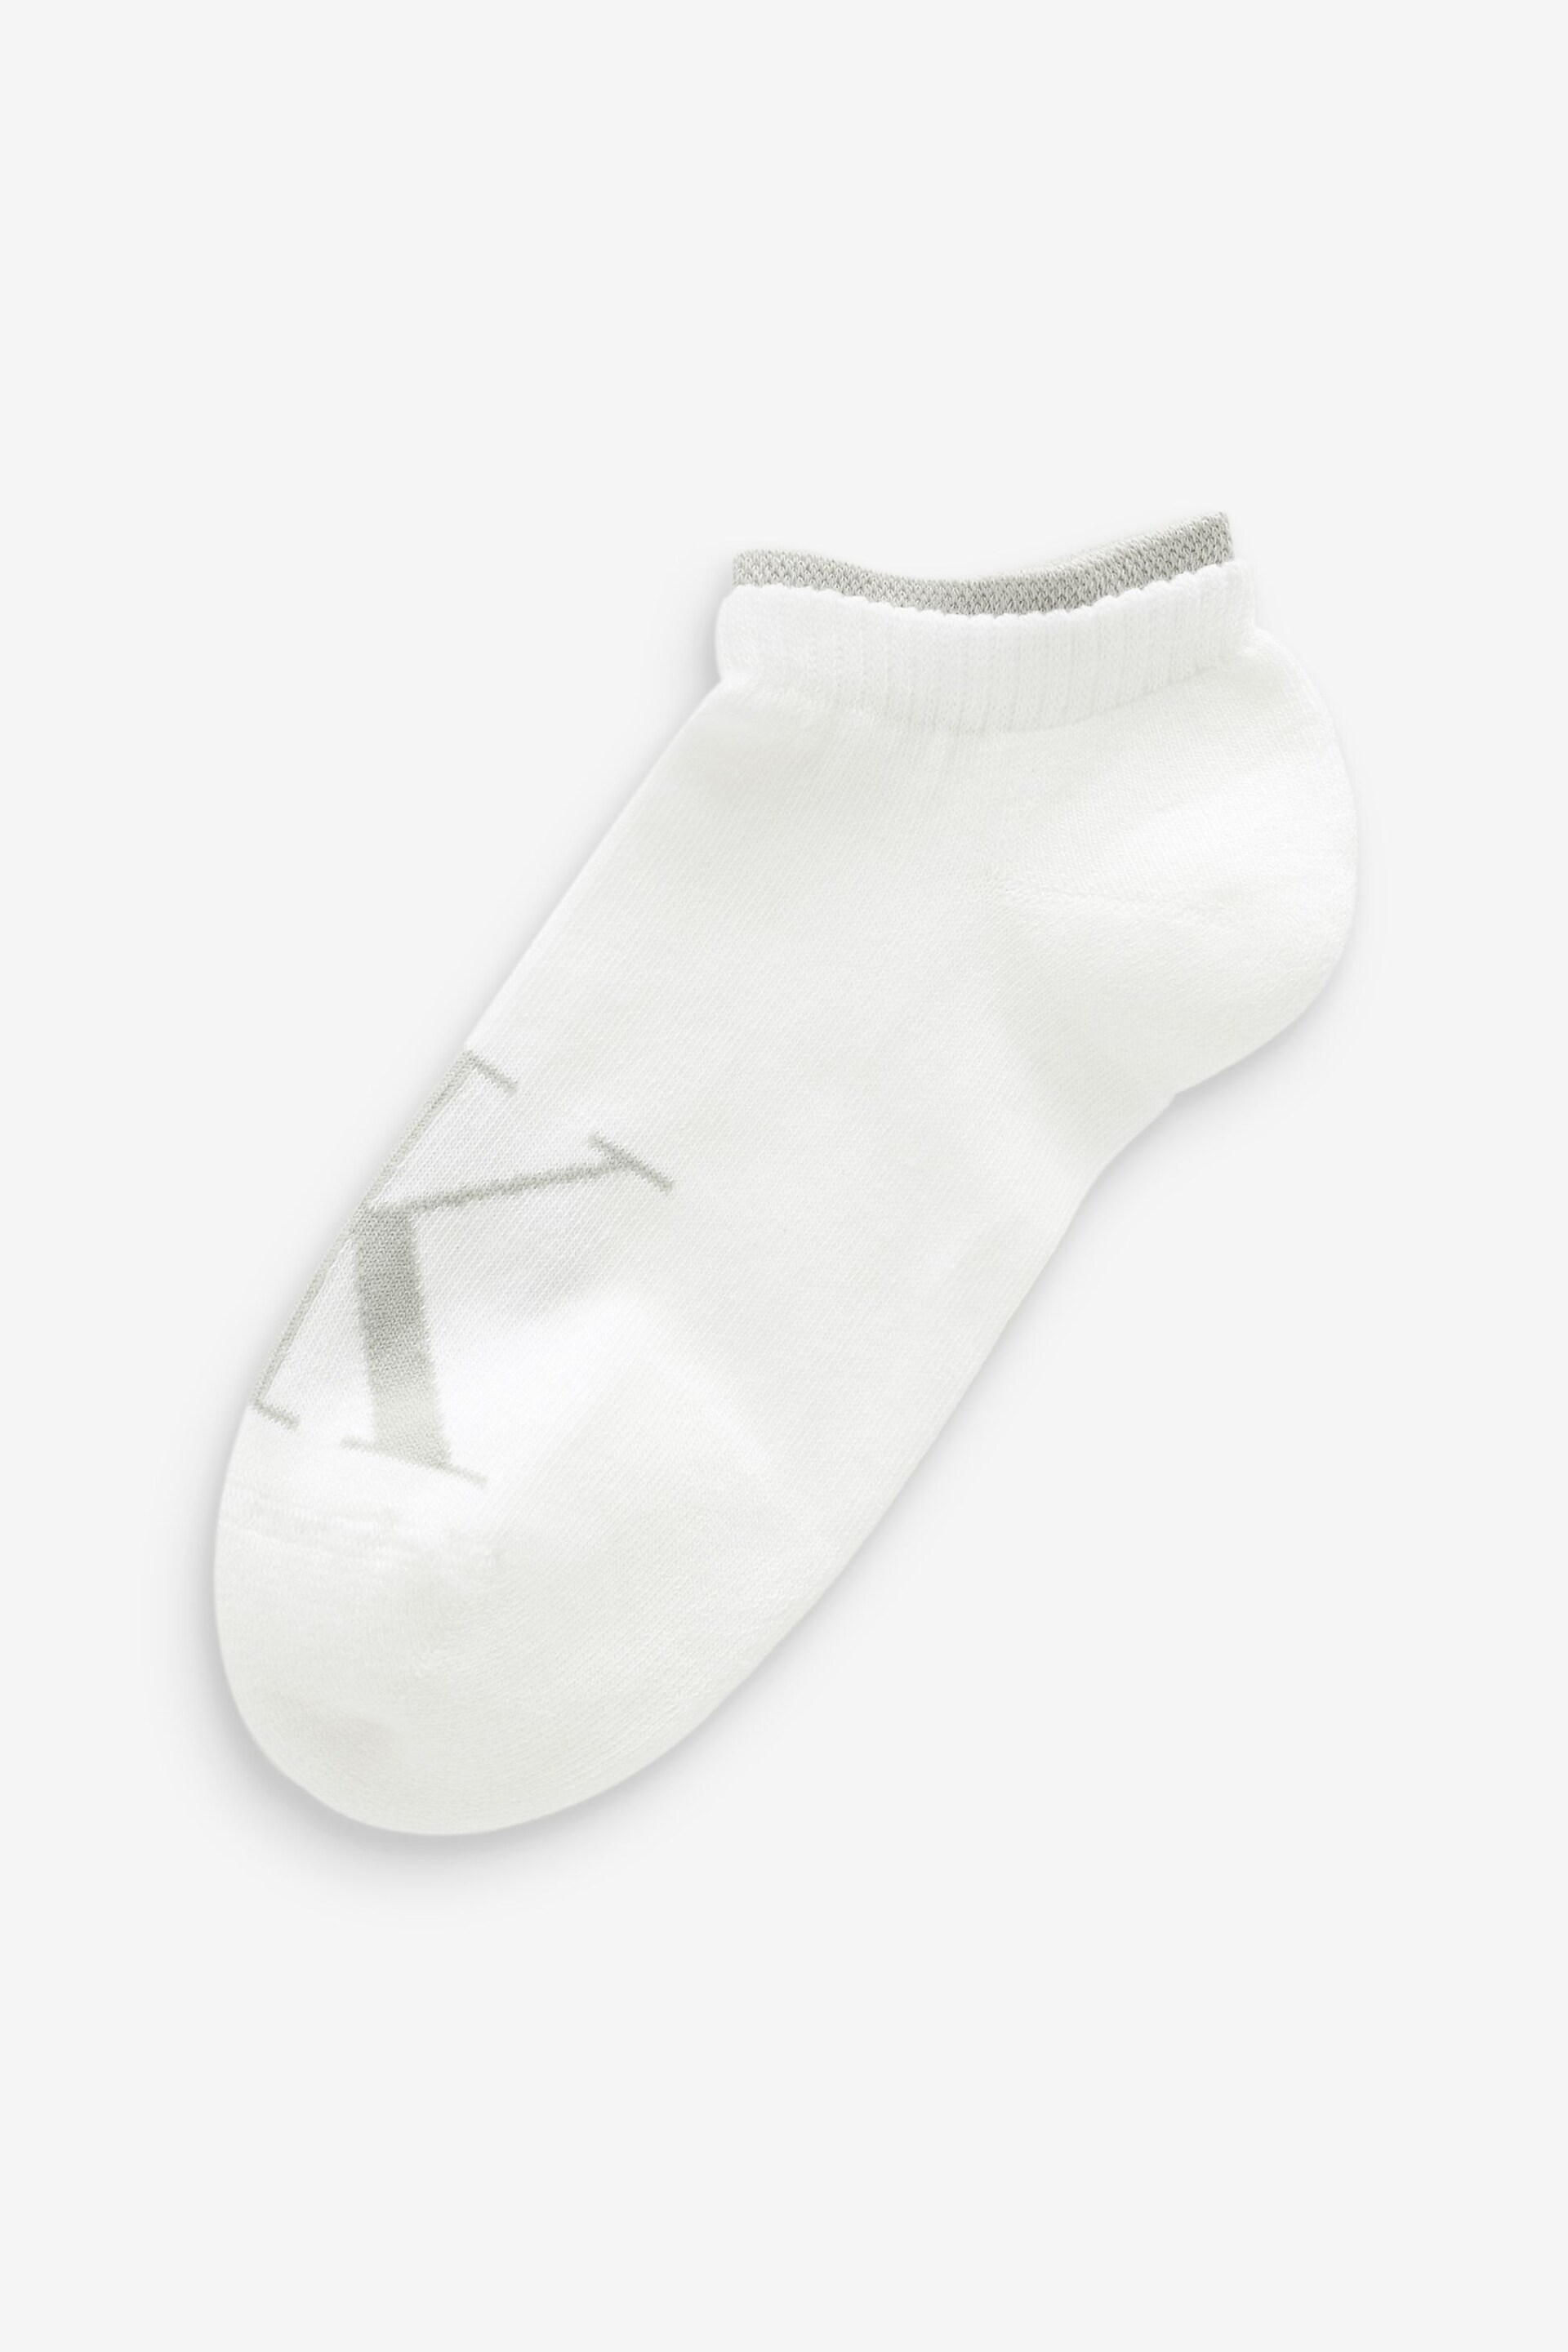 Calvin Klein White Womens Sneaker Socks 2 Pack - Image 2 of 3